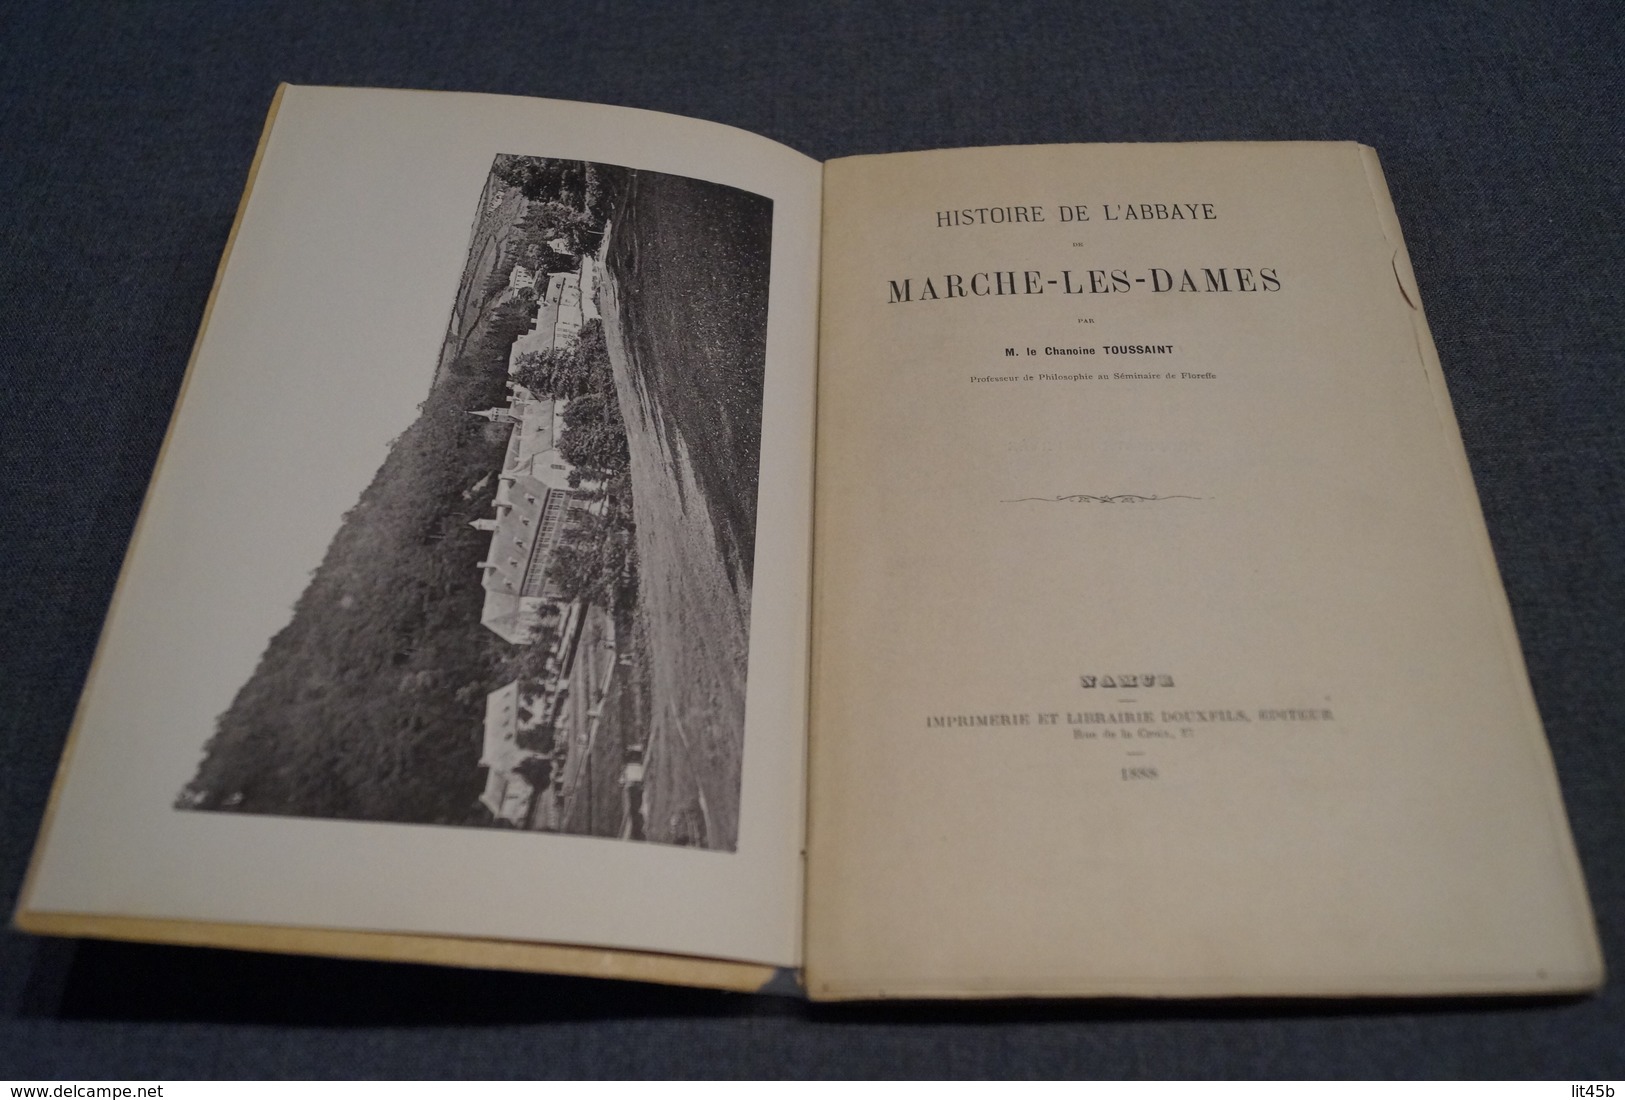 RARE 1888,histoire De L'abbaye De Marche-Les-Dames,Namur,122 Pages,21,5 Cm. Sur 14 Cm. - België